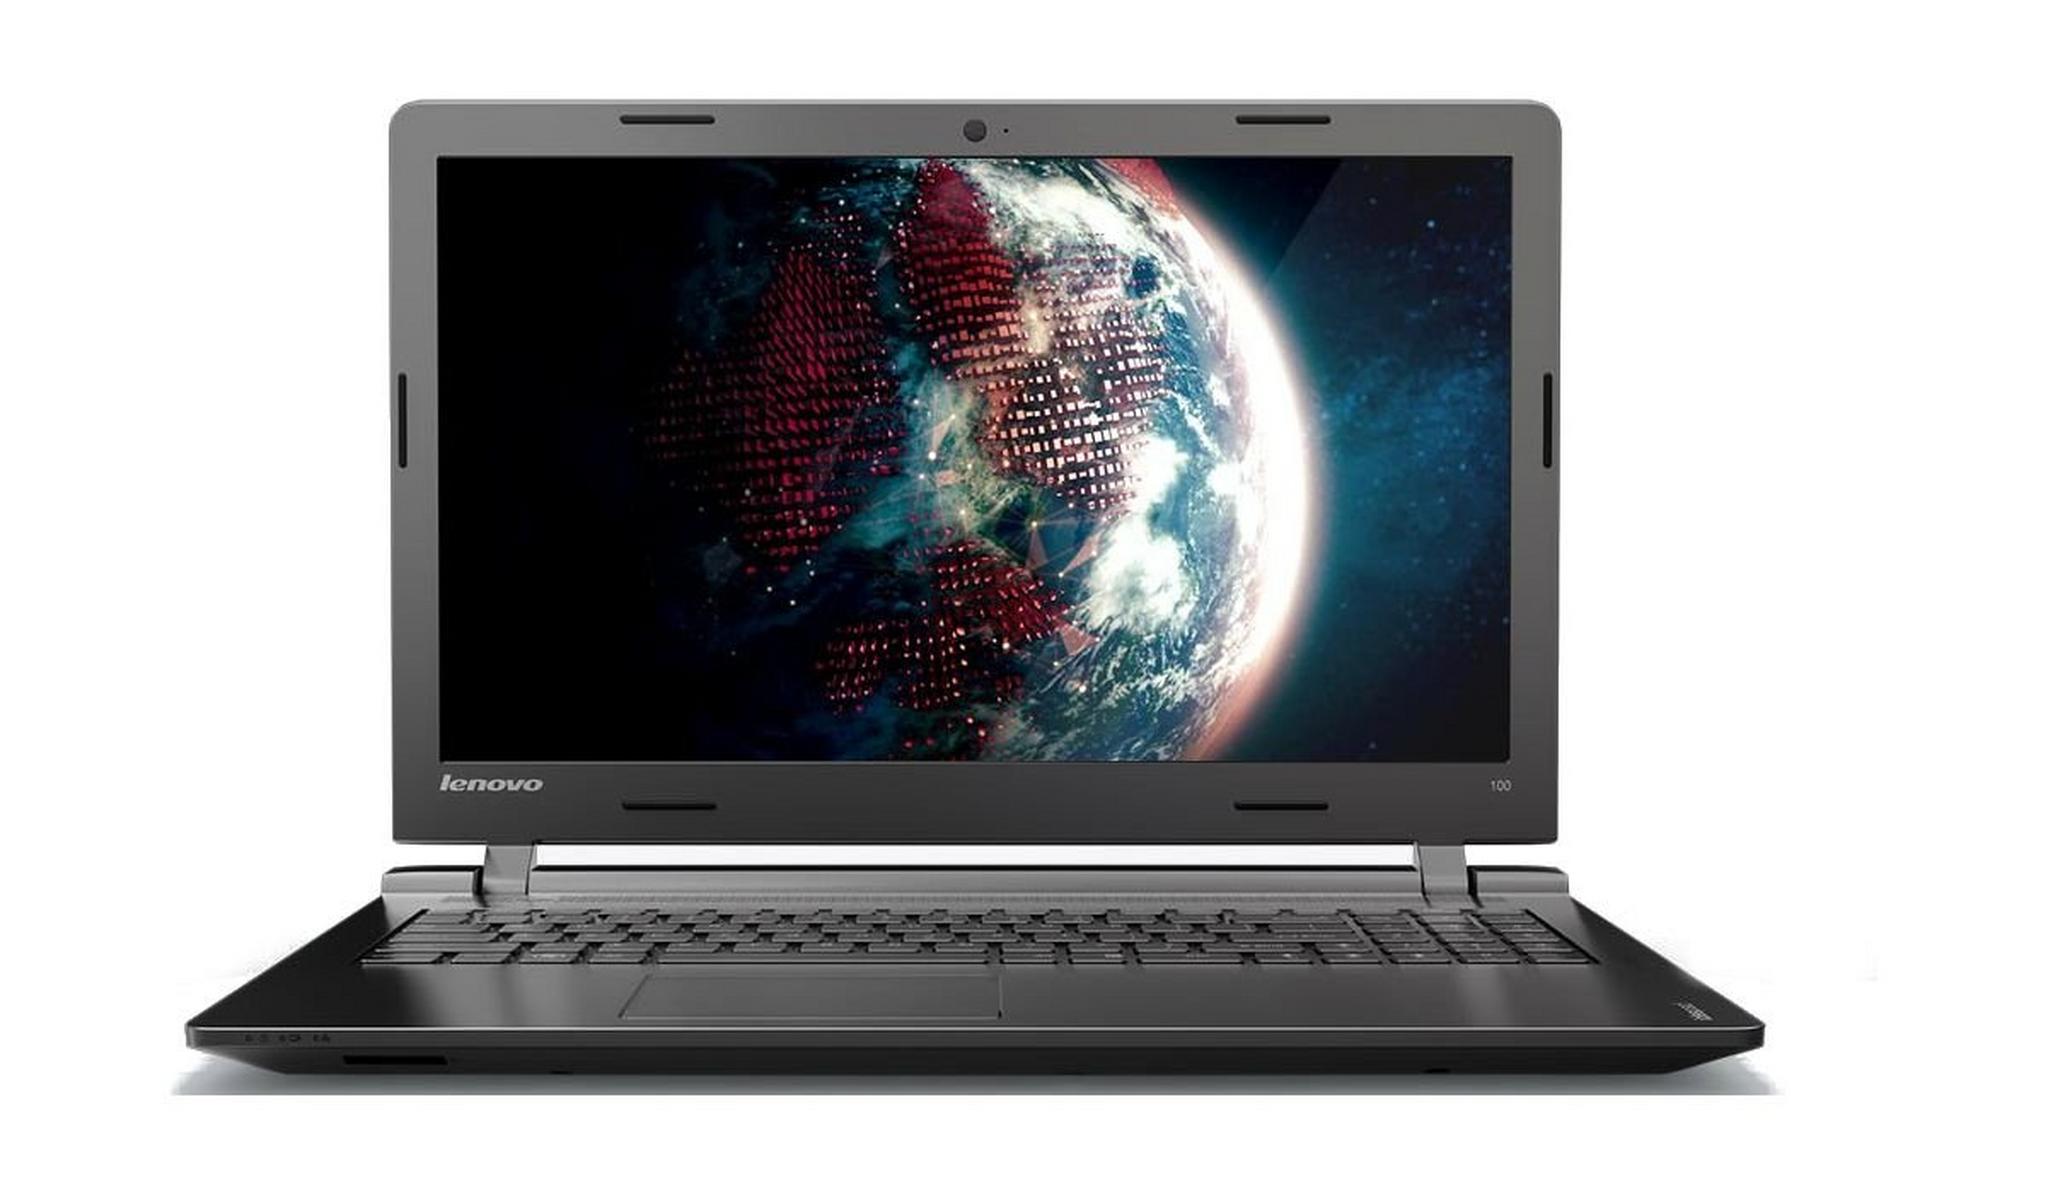 Lenovo IP100 Core-i5 4GB RAM 500GB HDD 2GB AMD 15.6-inch Laptop – Silver